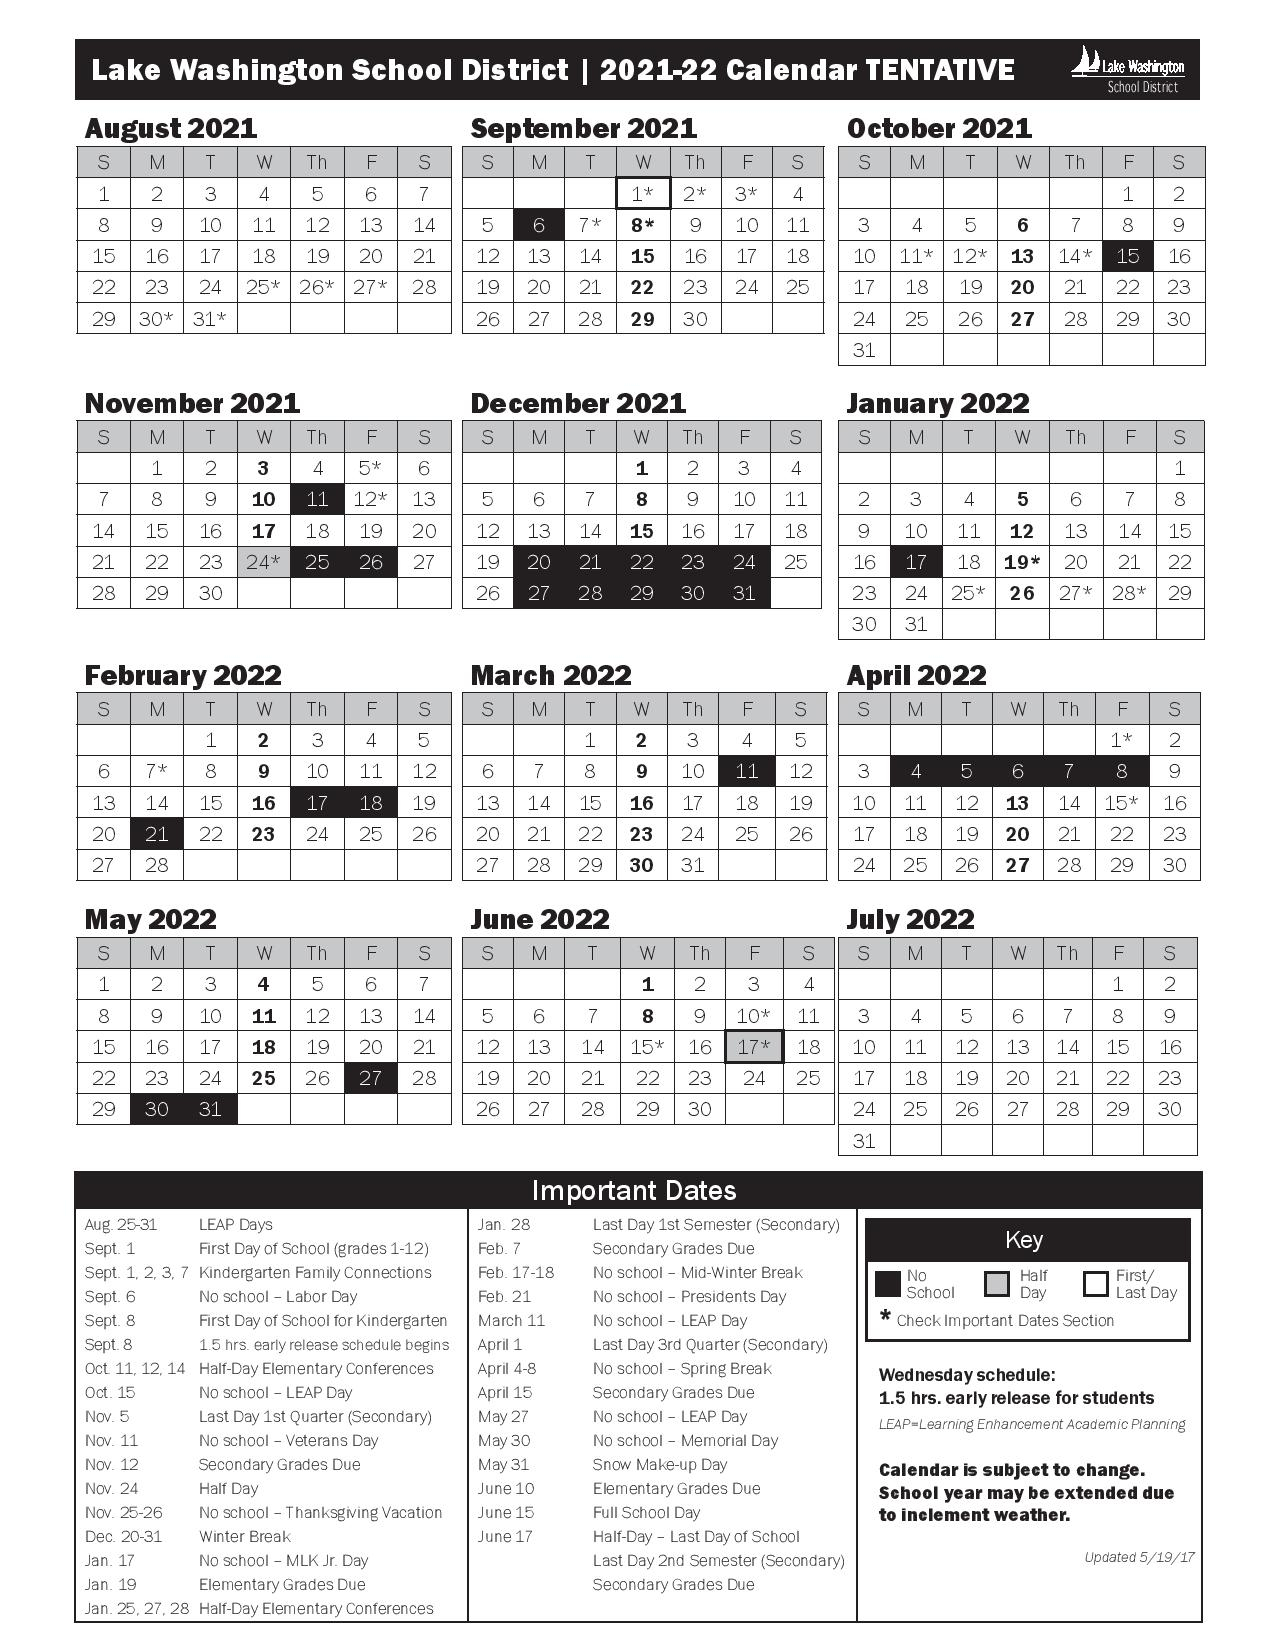 Lake Washington School District Calendar 2021-2022